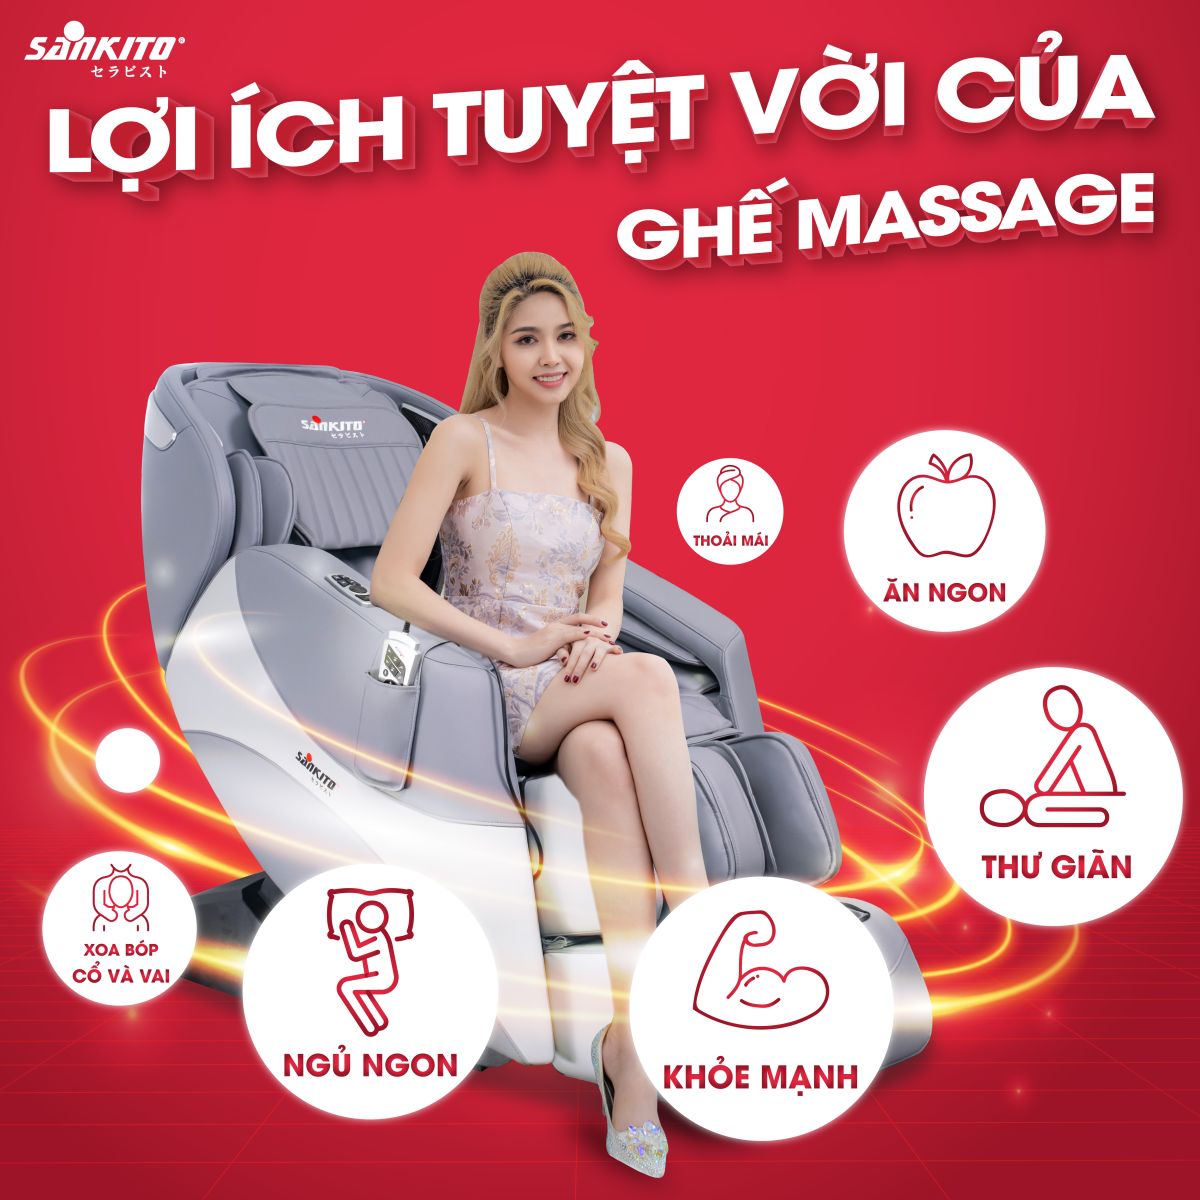 Lợi ích tuyệt vời của ghế massage khi sử dụng đều đặn 